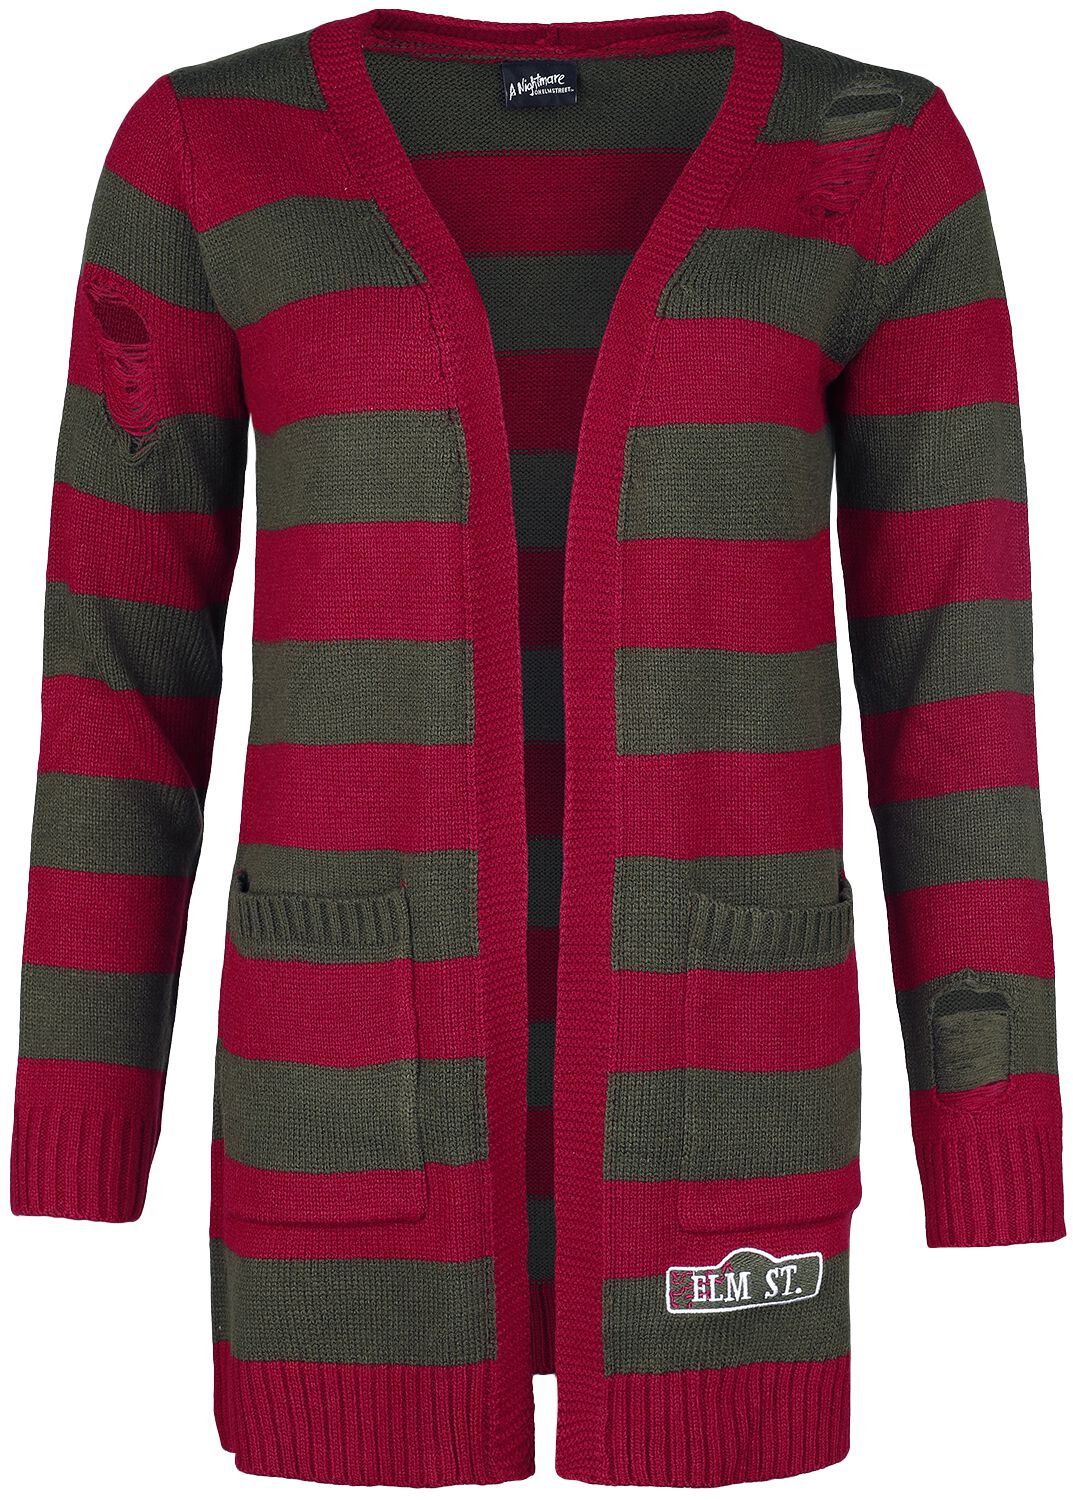 A Nightmare on Elm Street Cardigan - Elmstreet - S bis XXL - für Damen - Größe S - rot/grün  - EMP exklusives Merchandise!